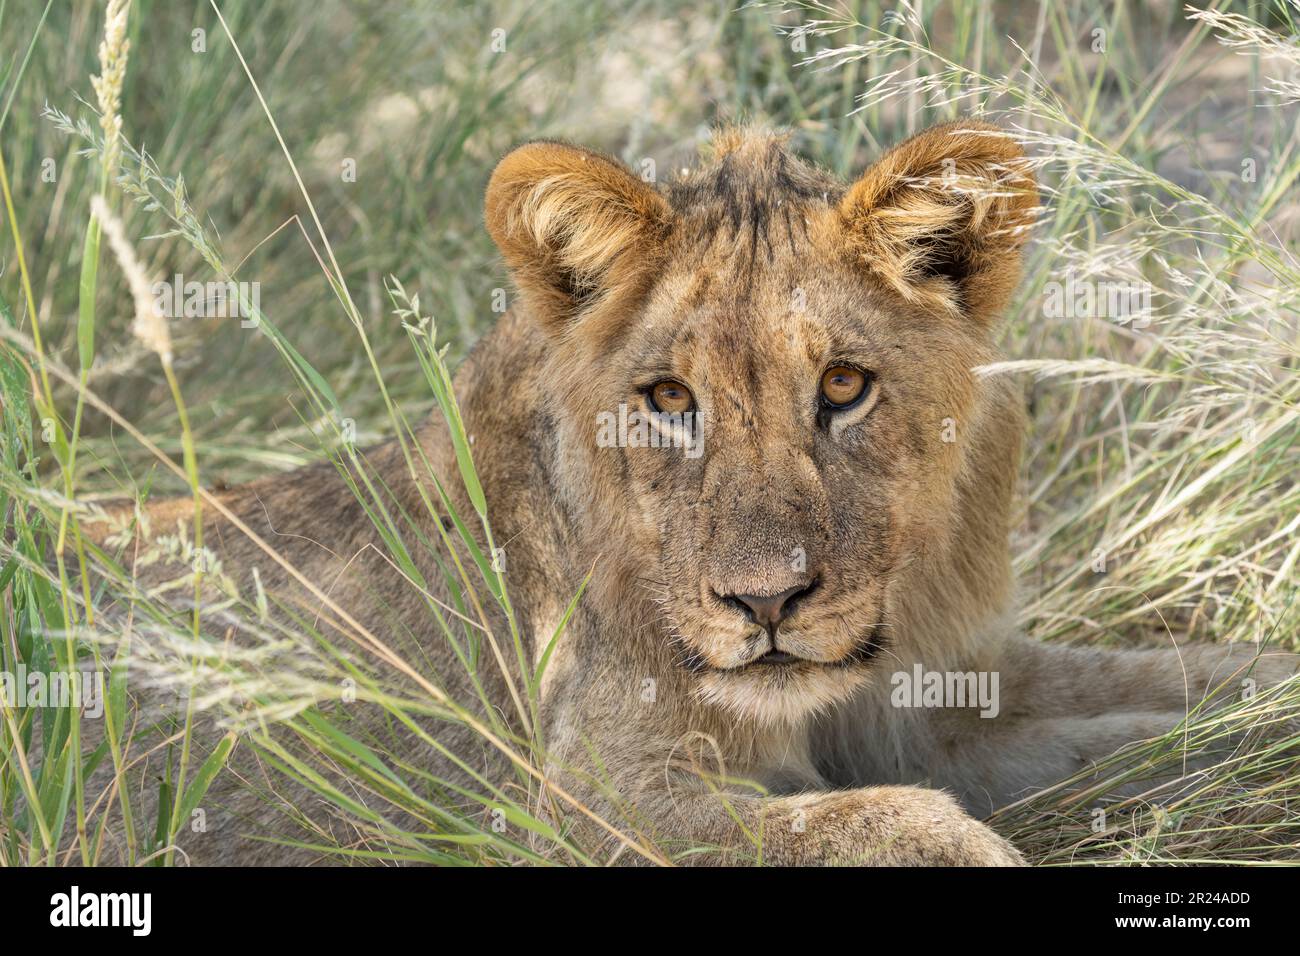 Lion cucciolo, il bambino guarda in macchina fotografica. Ritratto del volto, degli occhi, delle orecchie. Kalahari, Kgalagadi Transfrontier Park, Sudafrica Foto Stock